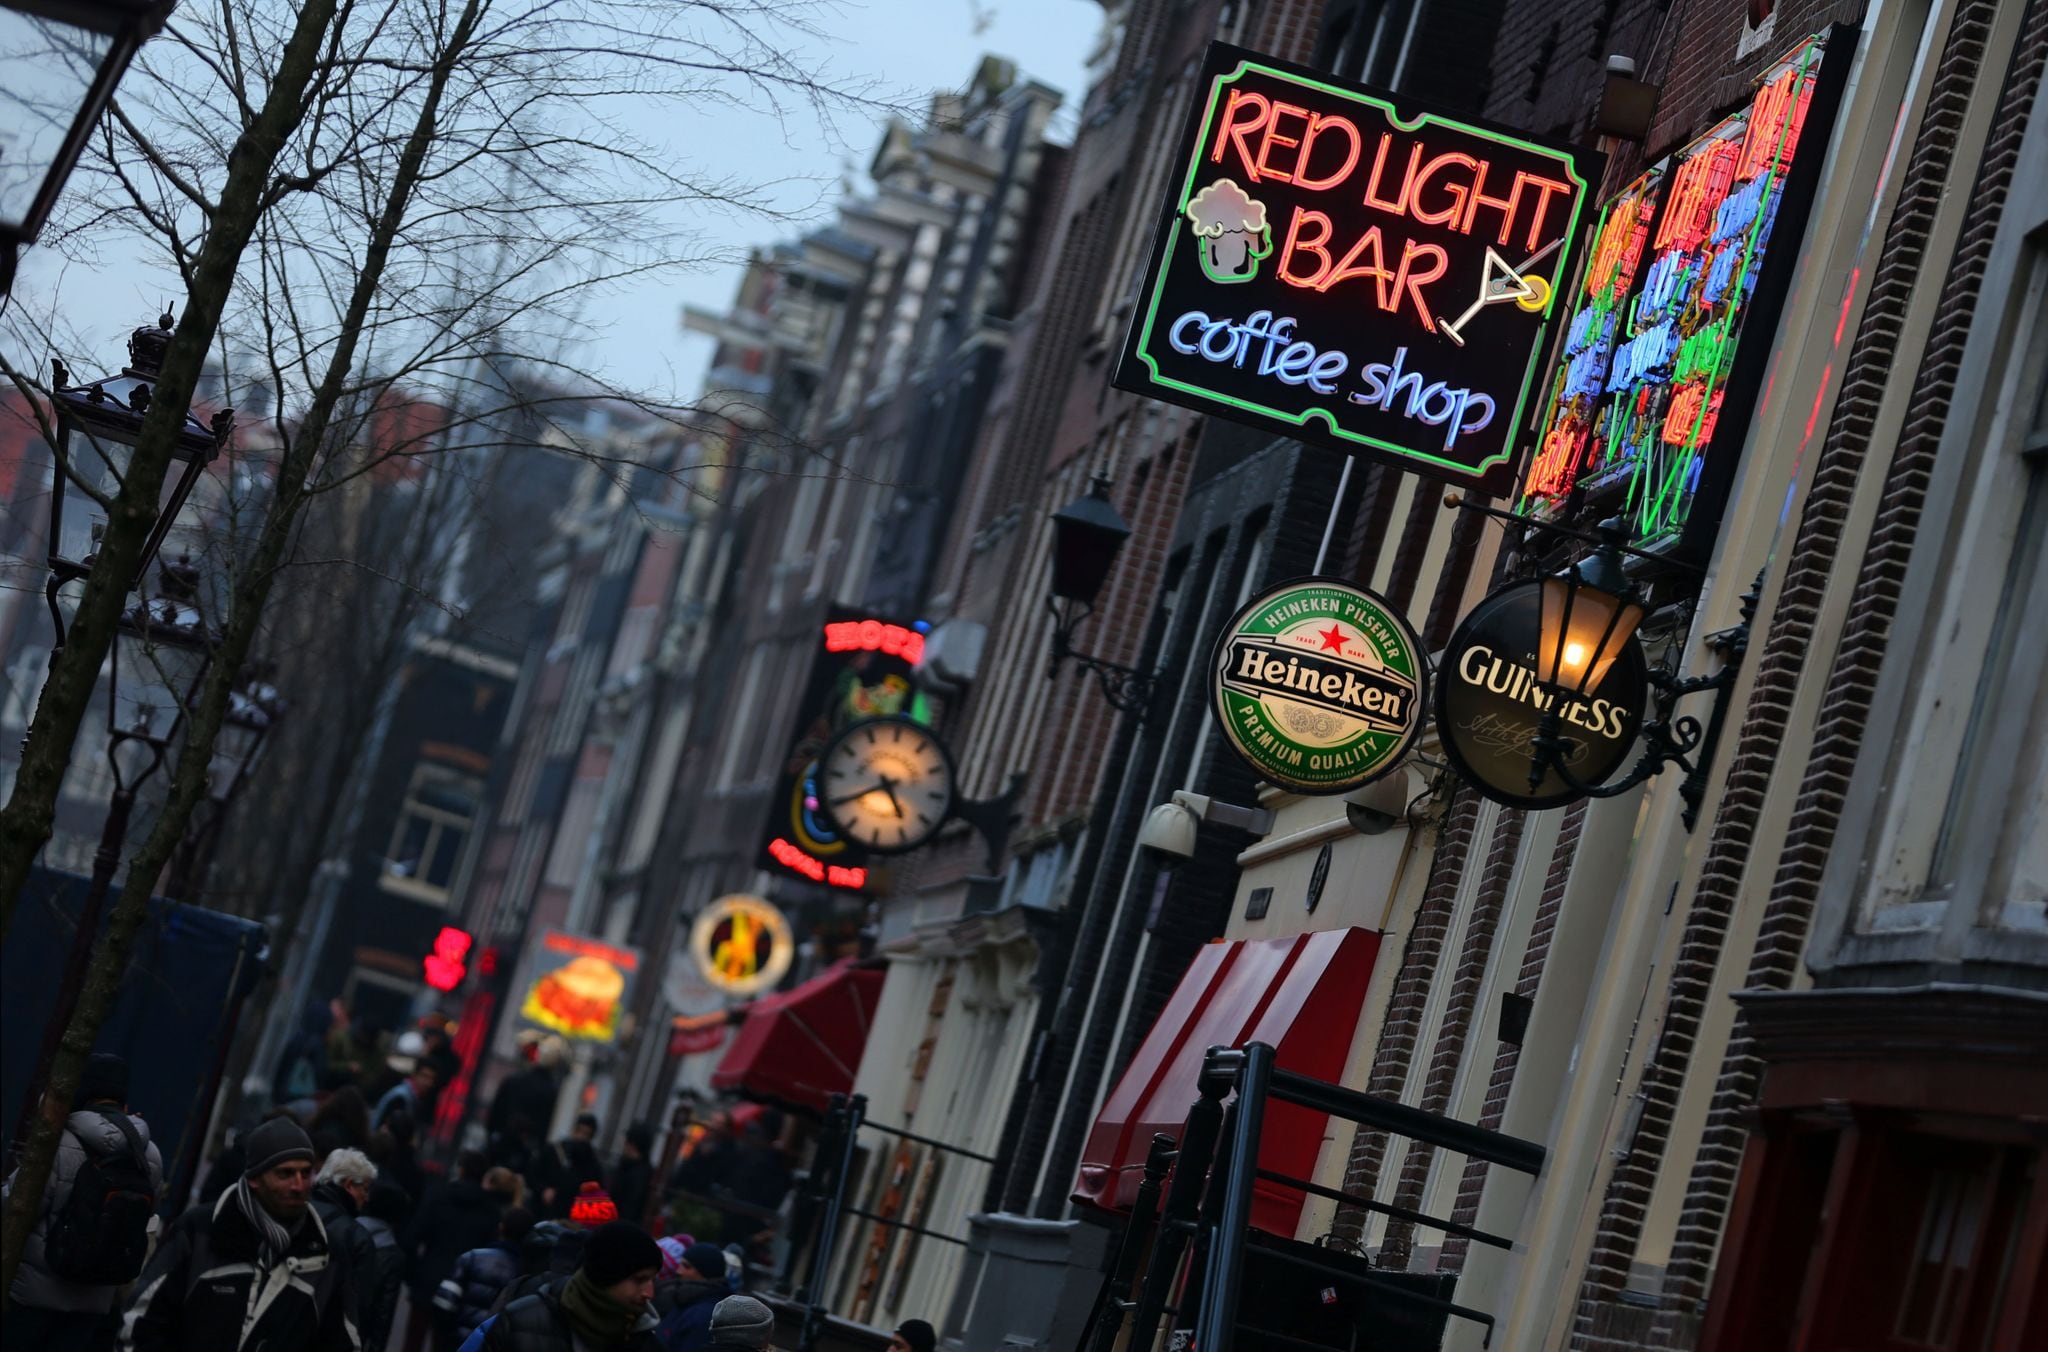  El Red Light Bar Coffee Shop en el Barrio Rojo de Ámsterdam. (Oliver Berg/dpa)